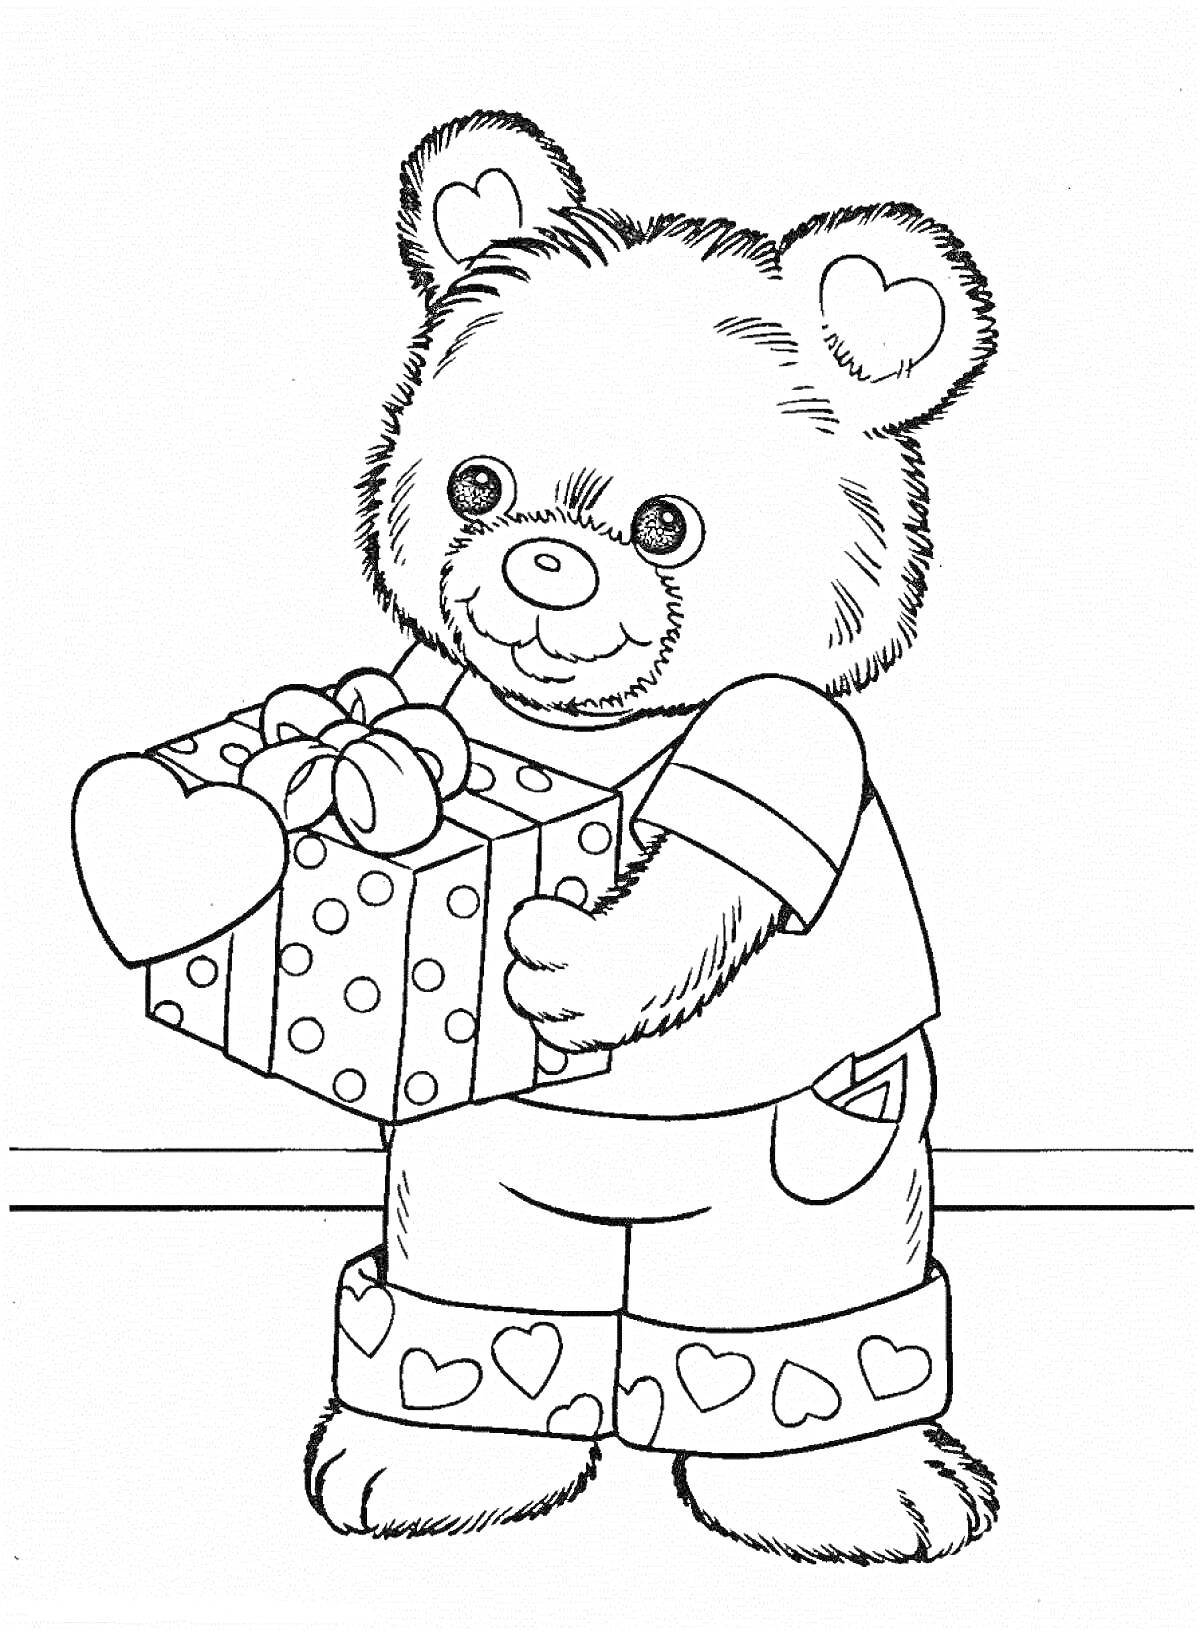 Раскраска Медвежонок в штанах с сердечками держит подарочную коробку с бантом и сердечком